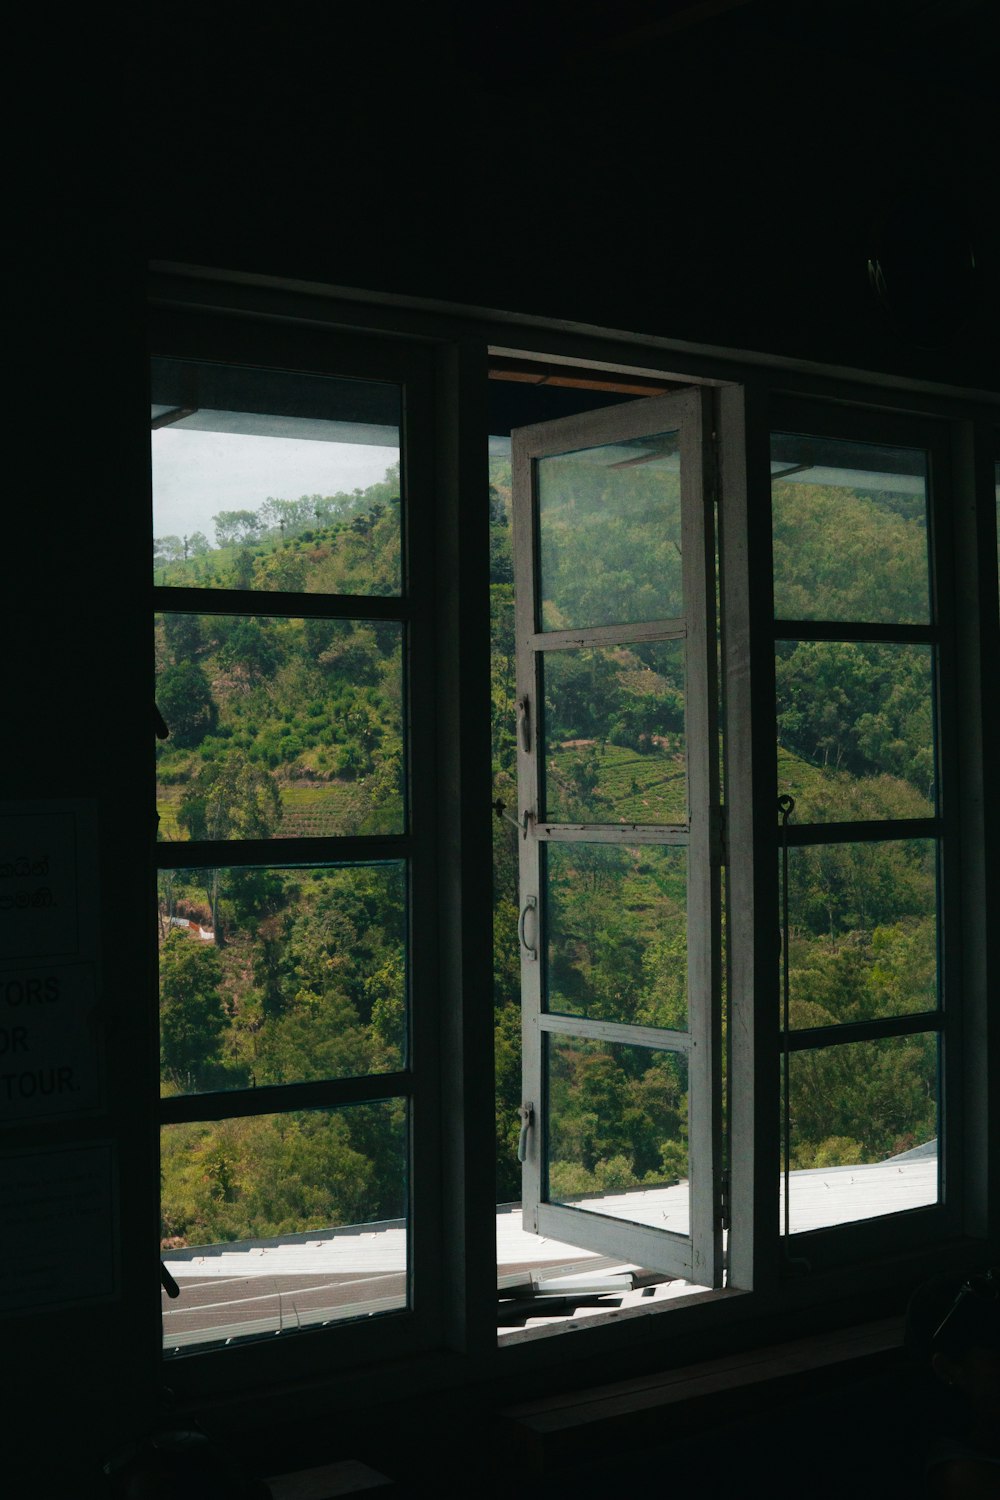 緑豊かな丘の中腹を望む窓